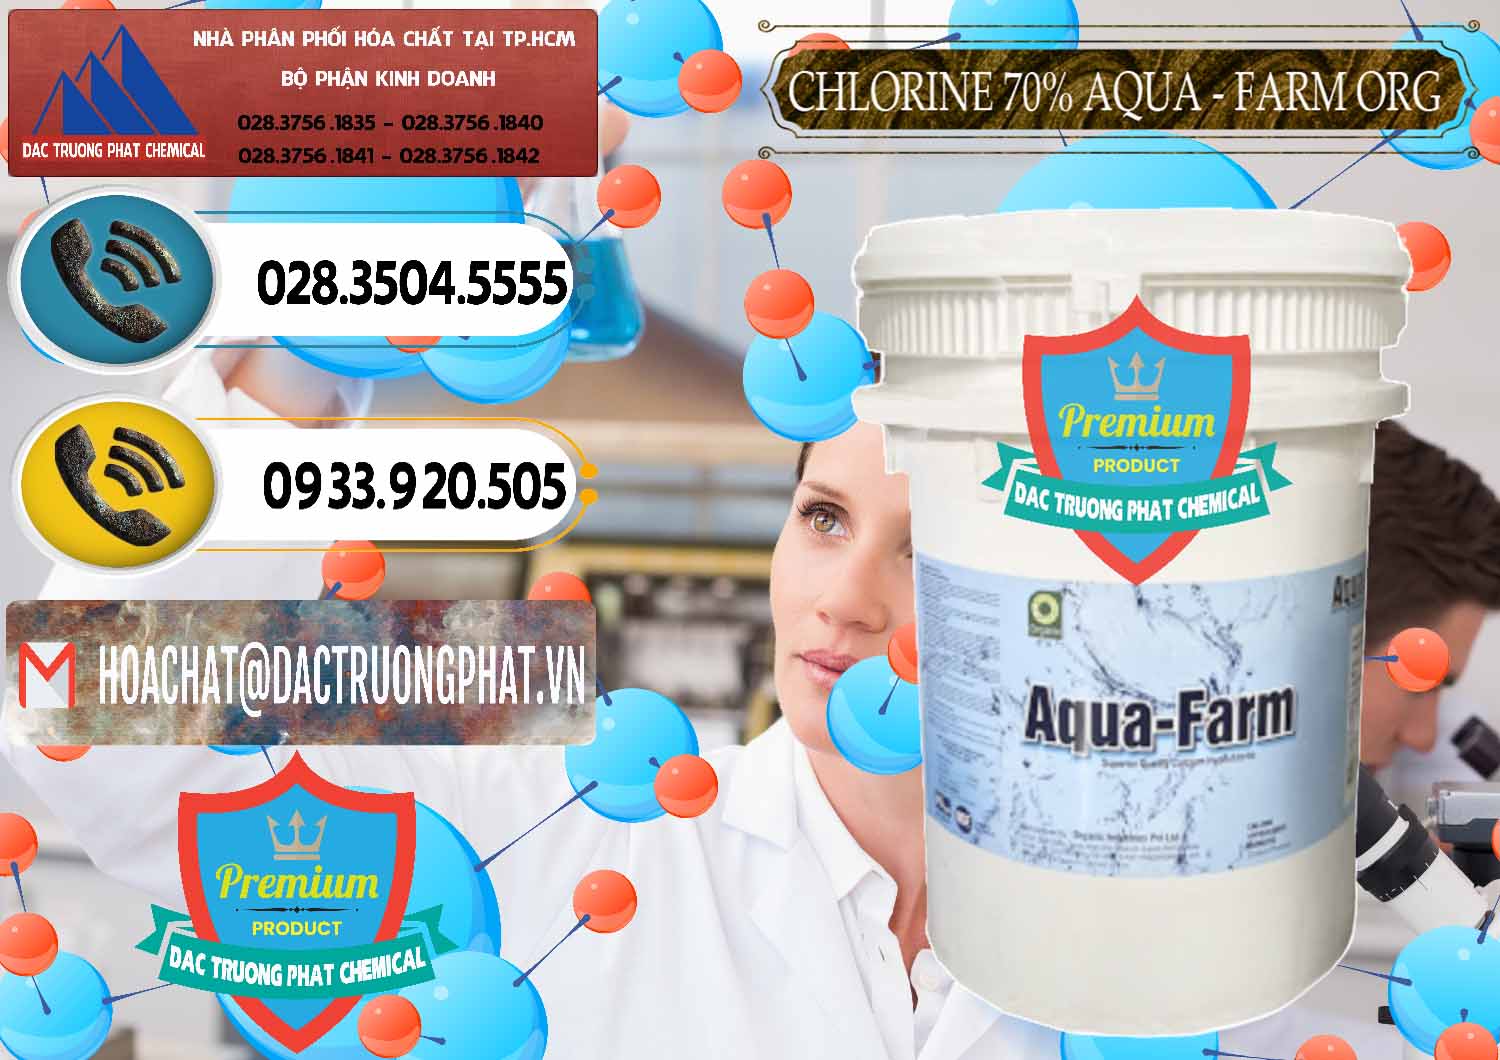 Đơn vị phân phối & bán Chlorine – Clorin 70% Aqua - Farm ORG Organic Ấn Độ India - 0246 - Cty nhập khẩu - cung cấp hóa chất tại TP.HCM - hoachatdetnhuom.vn